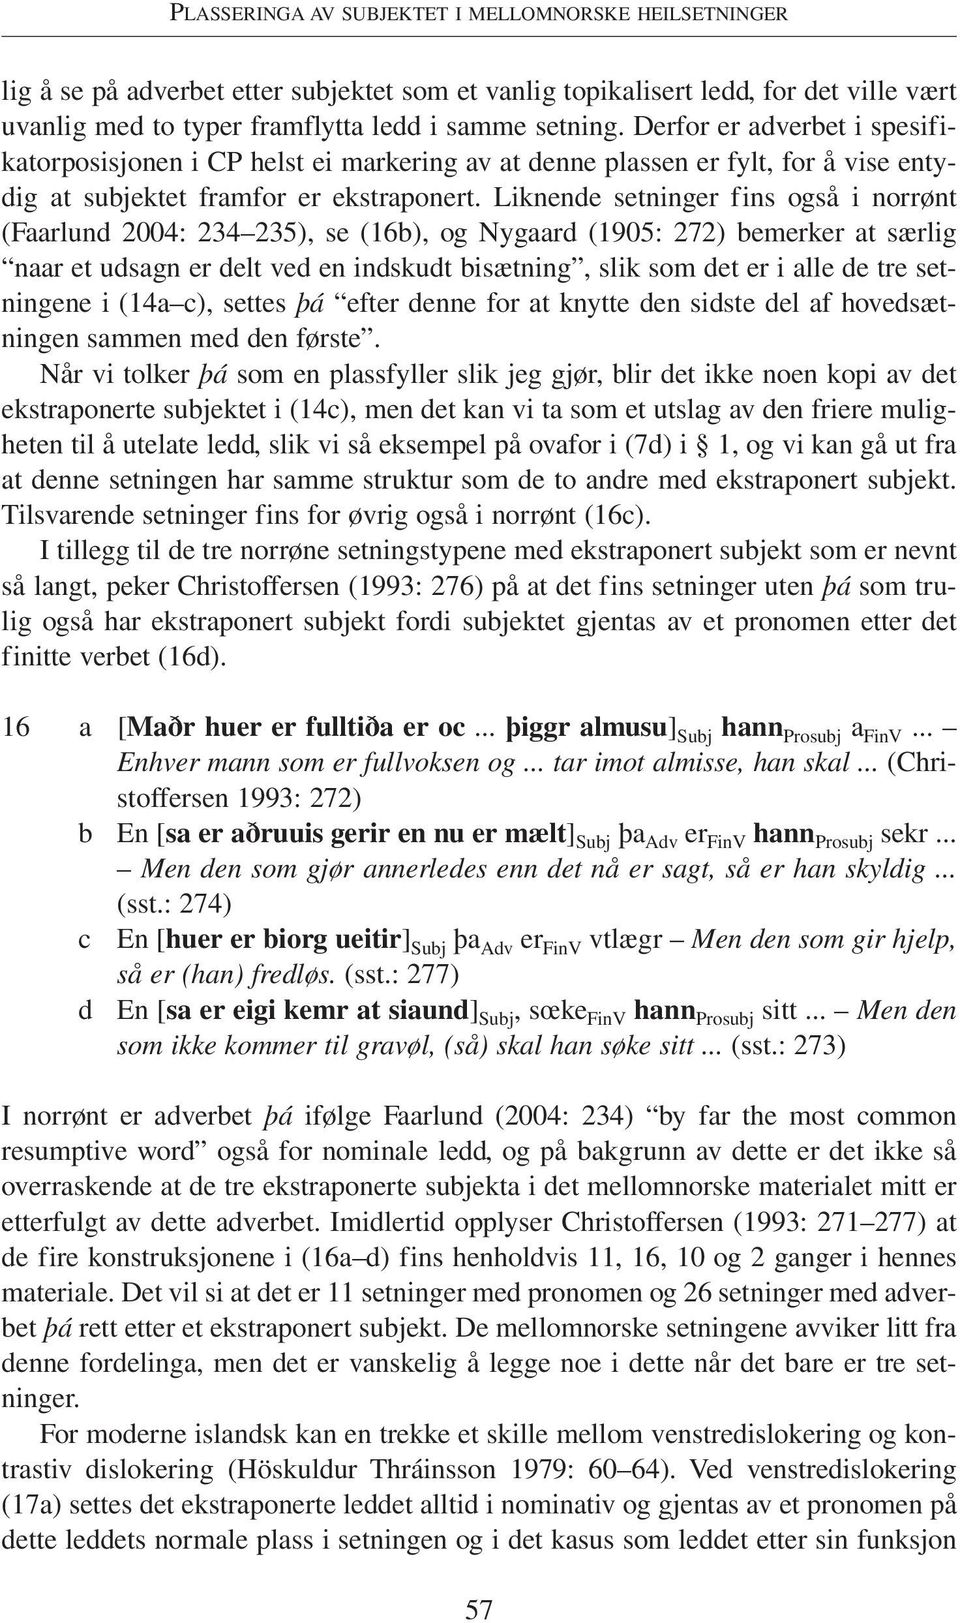 Liknende setninger fins også i norrønt (Faarlund 2004: 234 235), se (16b), og Nygaard (1905: 272) bemerker at særlig naar et udsagn er deled en indskudt bisætning, slik som det er i alle de tre